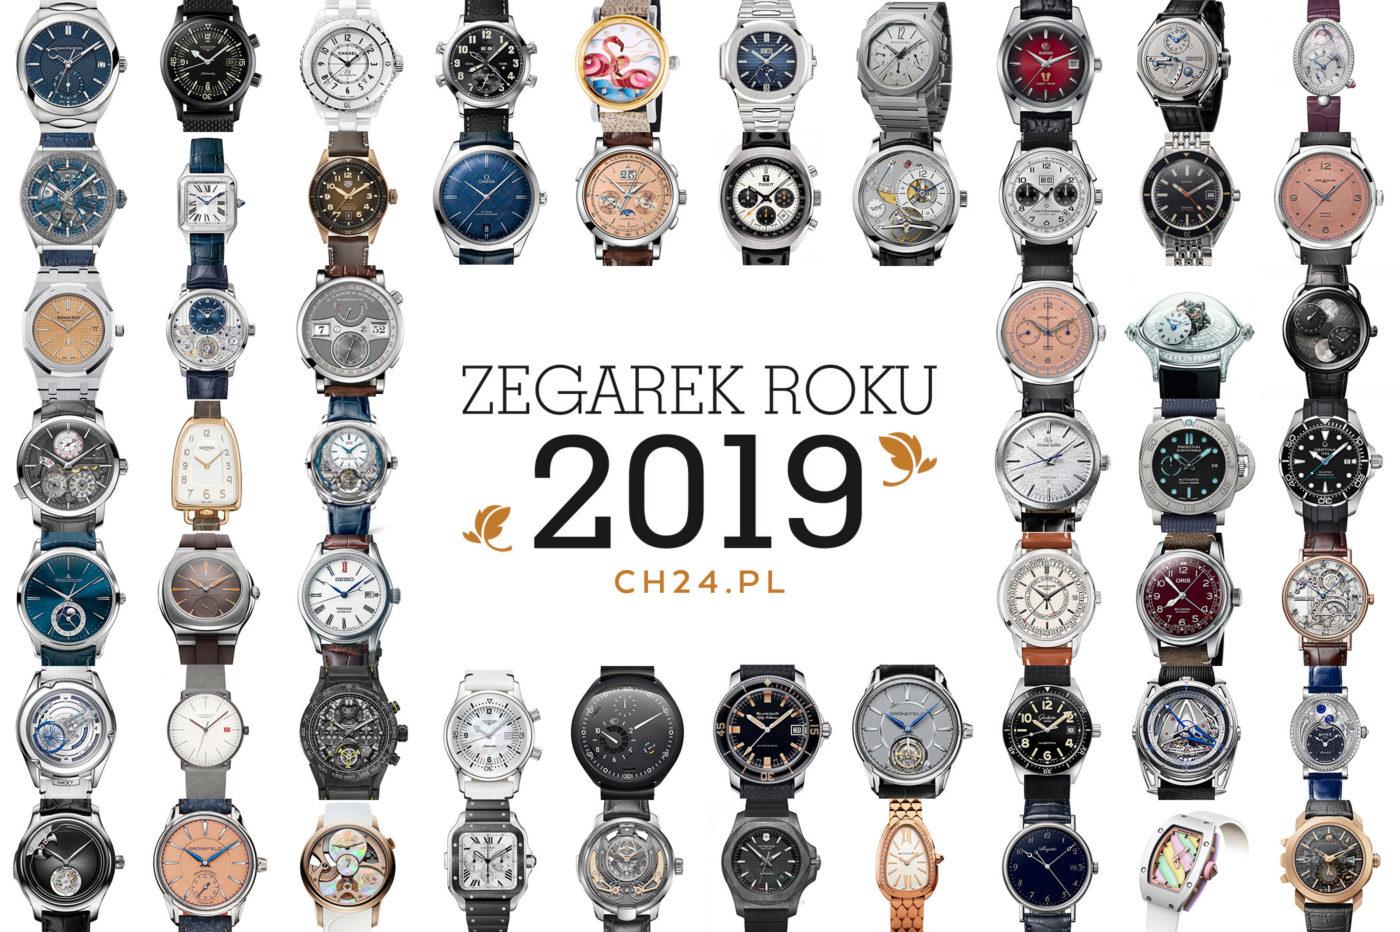 Zegarek Roku 2019